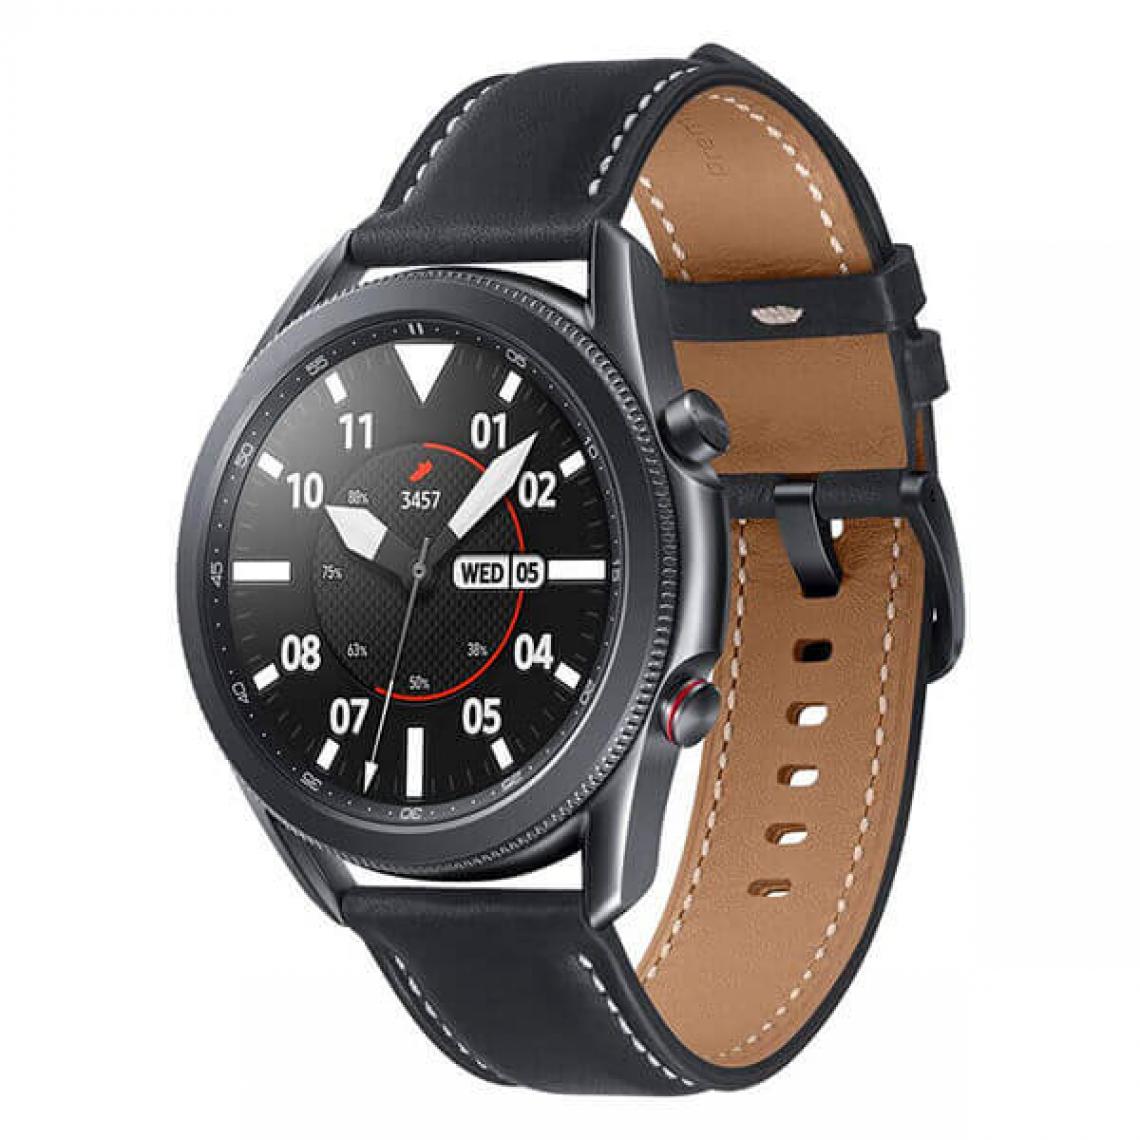 Samsung - Samsung Watch 3 45mm Noir (Mystic Black) Wi-Fi R840 - Montre connectée